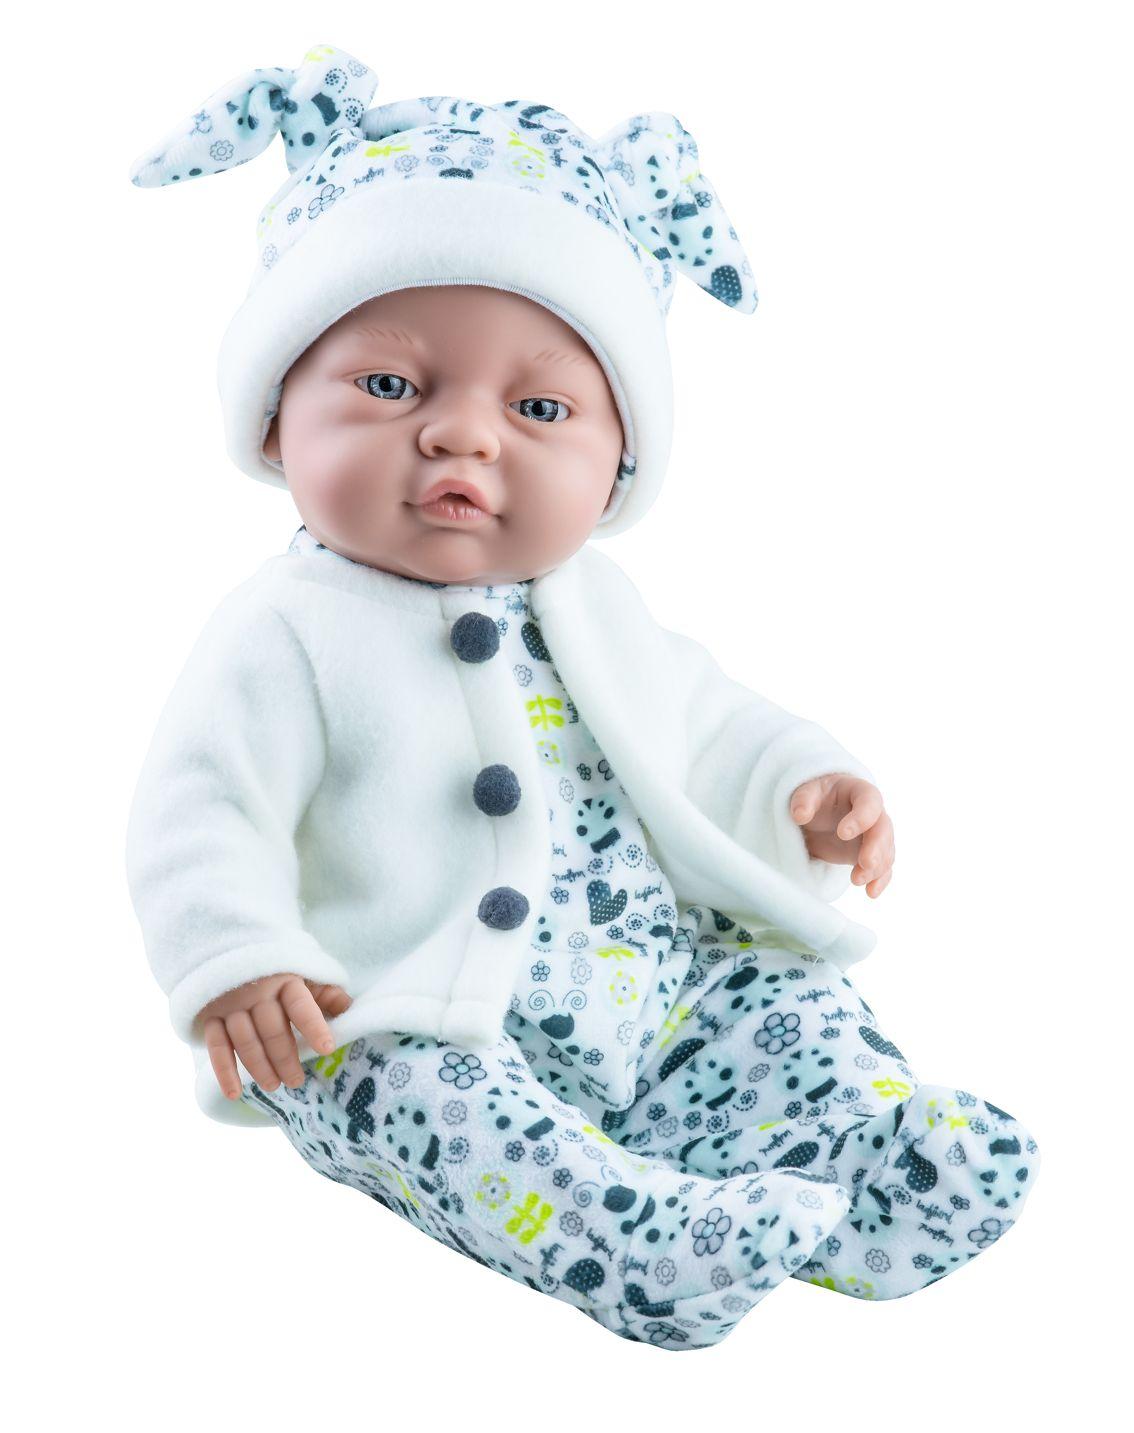 Realistické miminko - chlapeček Hynek od firmy Paola Reina ze Španělska